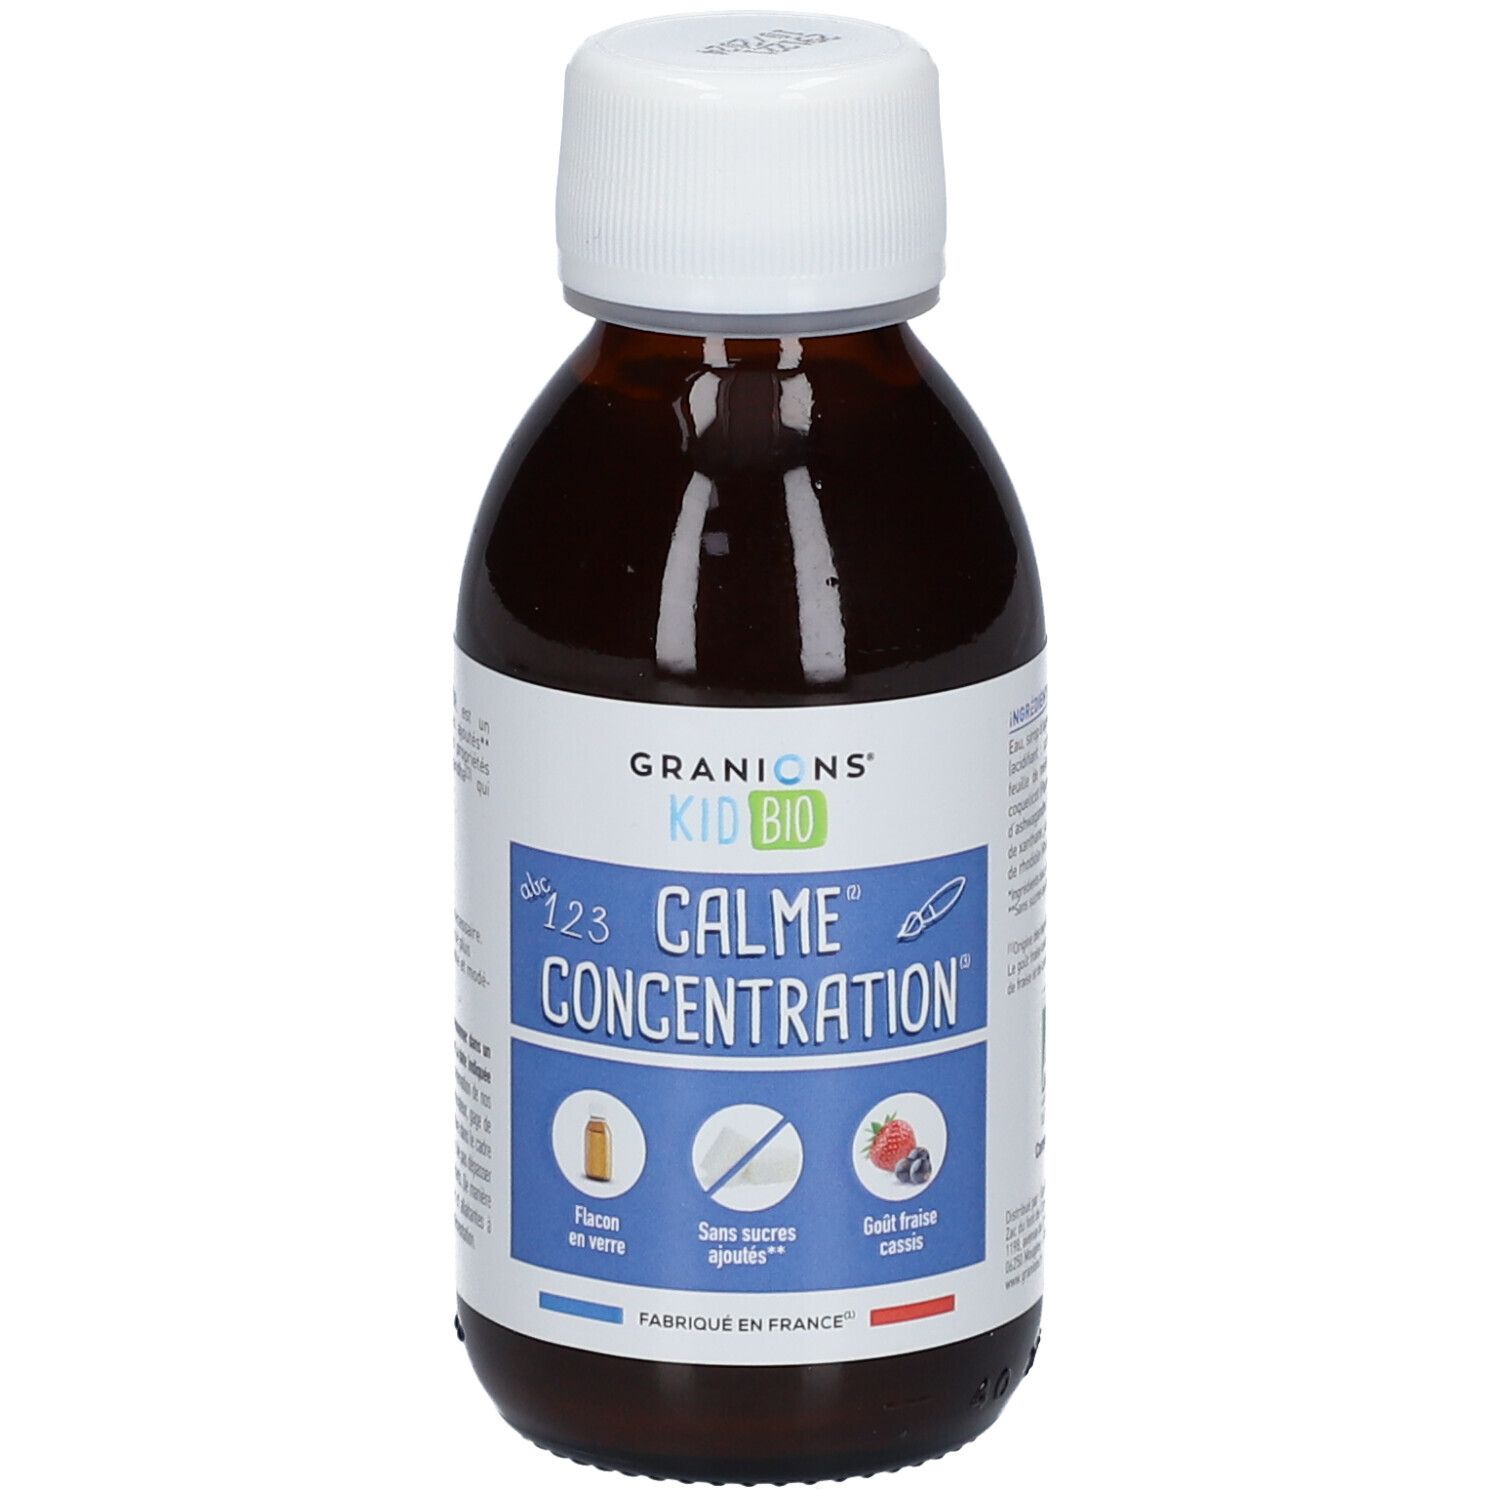 Granions® Kid Bio Calme Concentration - Sirop Aux plantes Goût Fraise Cassis